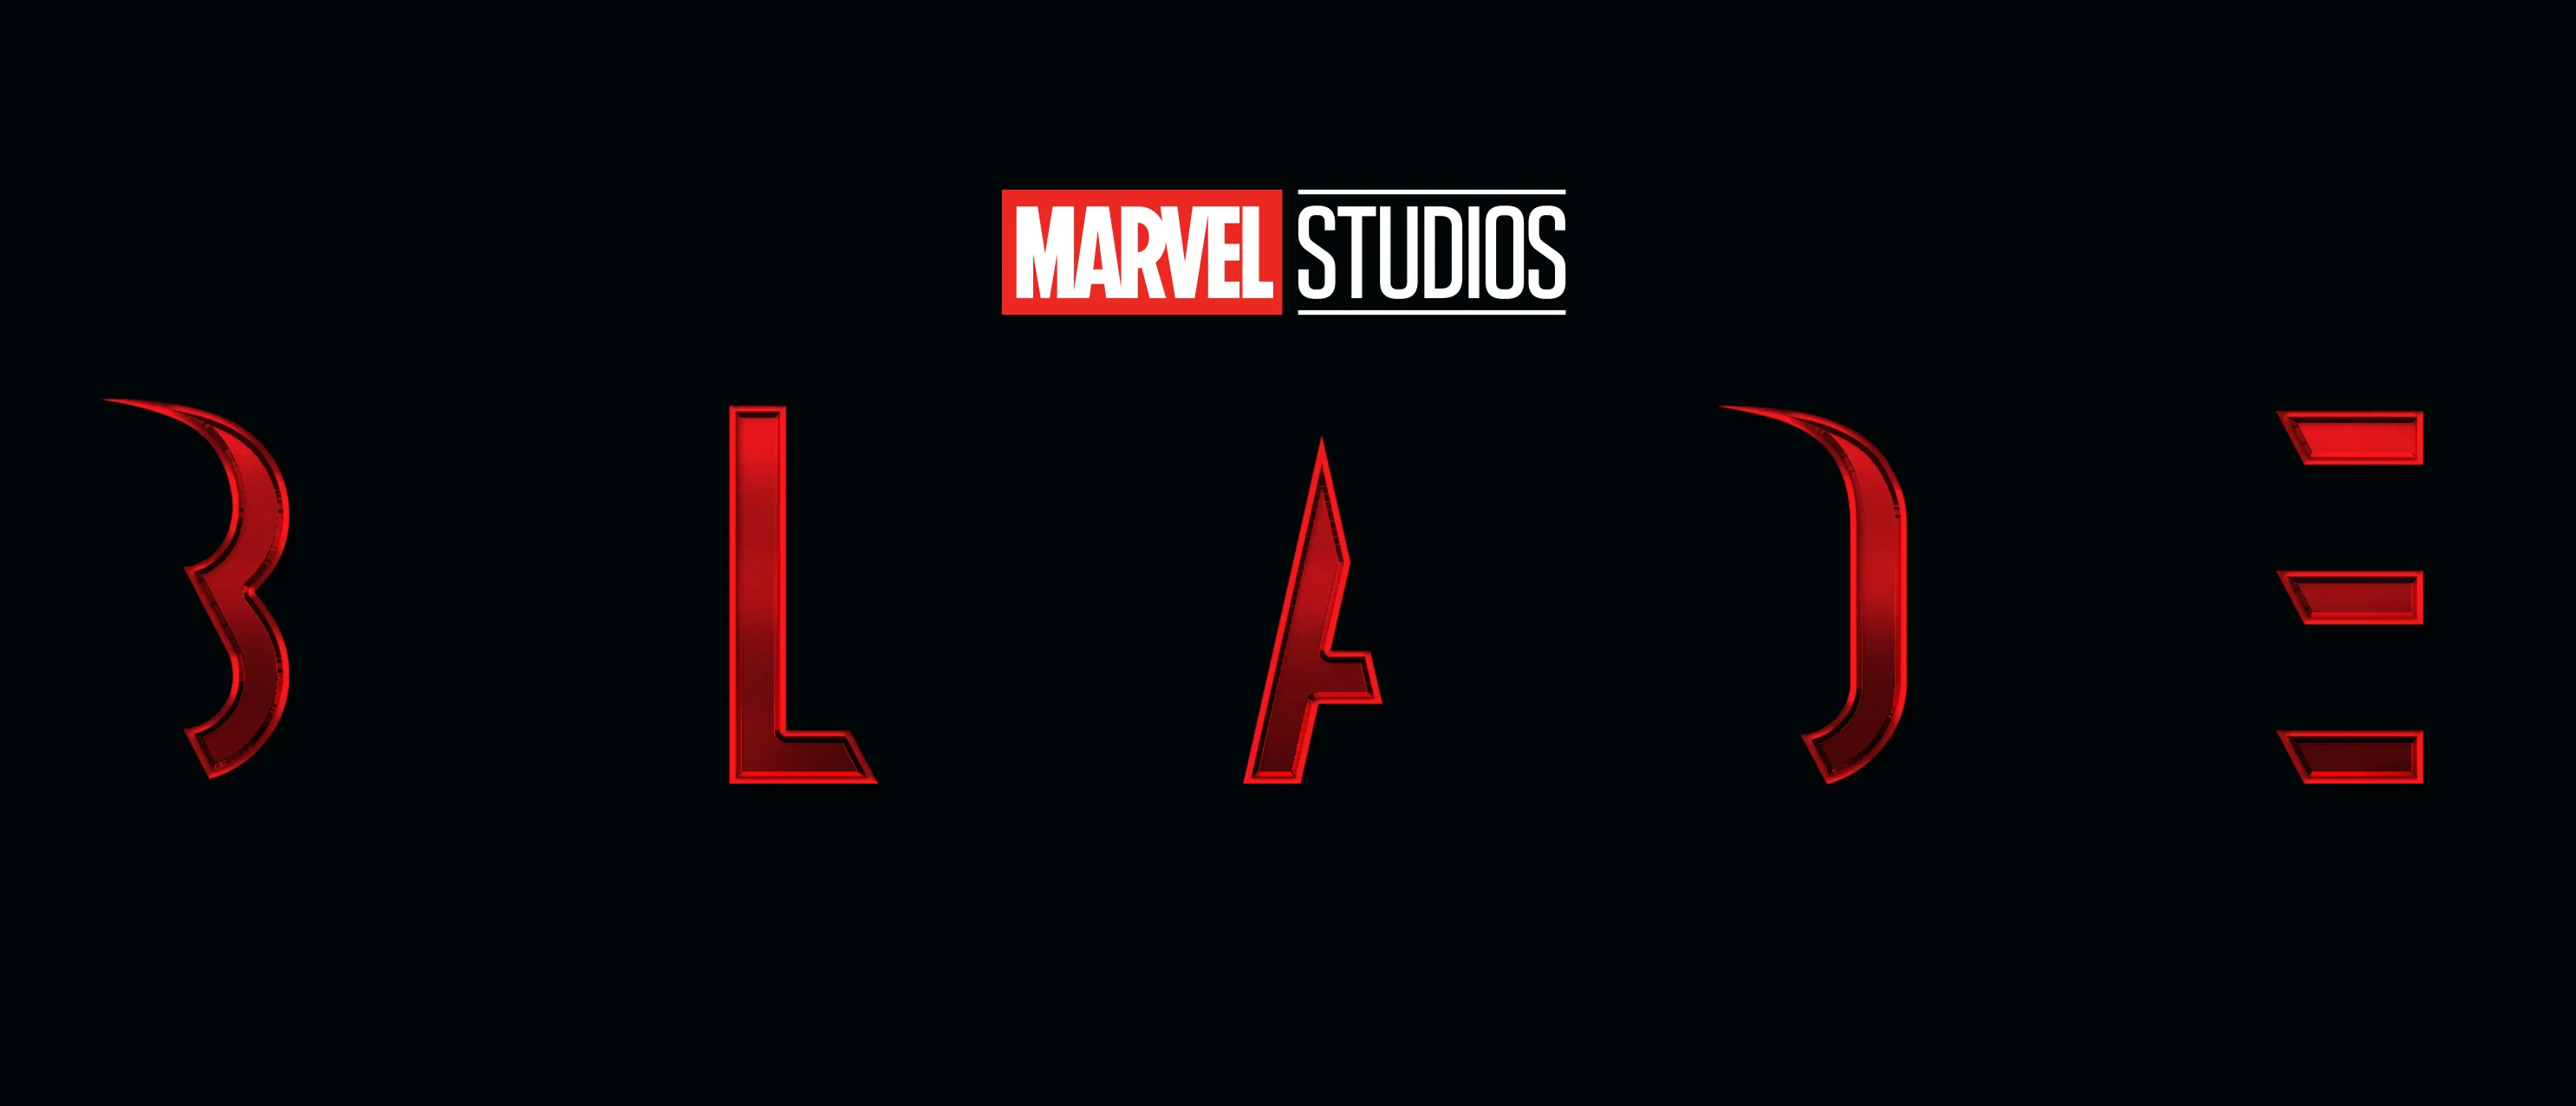 Tudo o que temos de Balde até agora é uma logo e um sonho (Imagem: Divulgação/Marvel Studios)